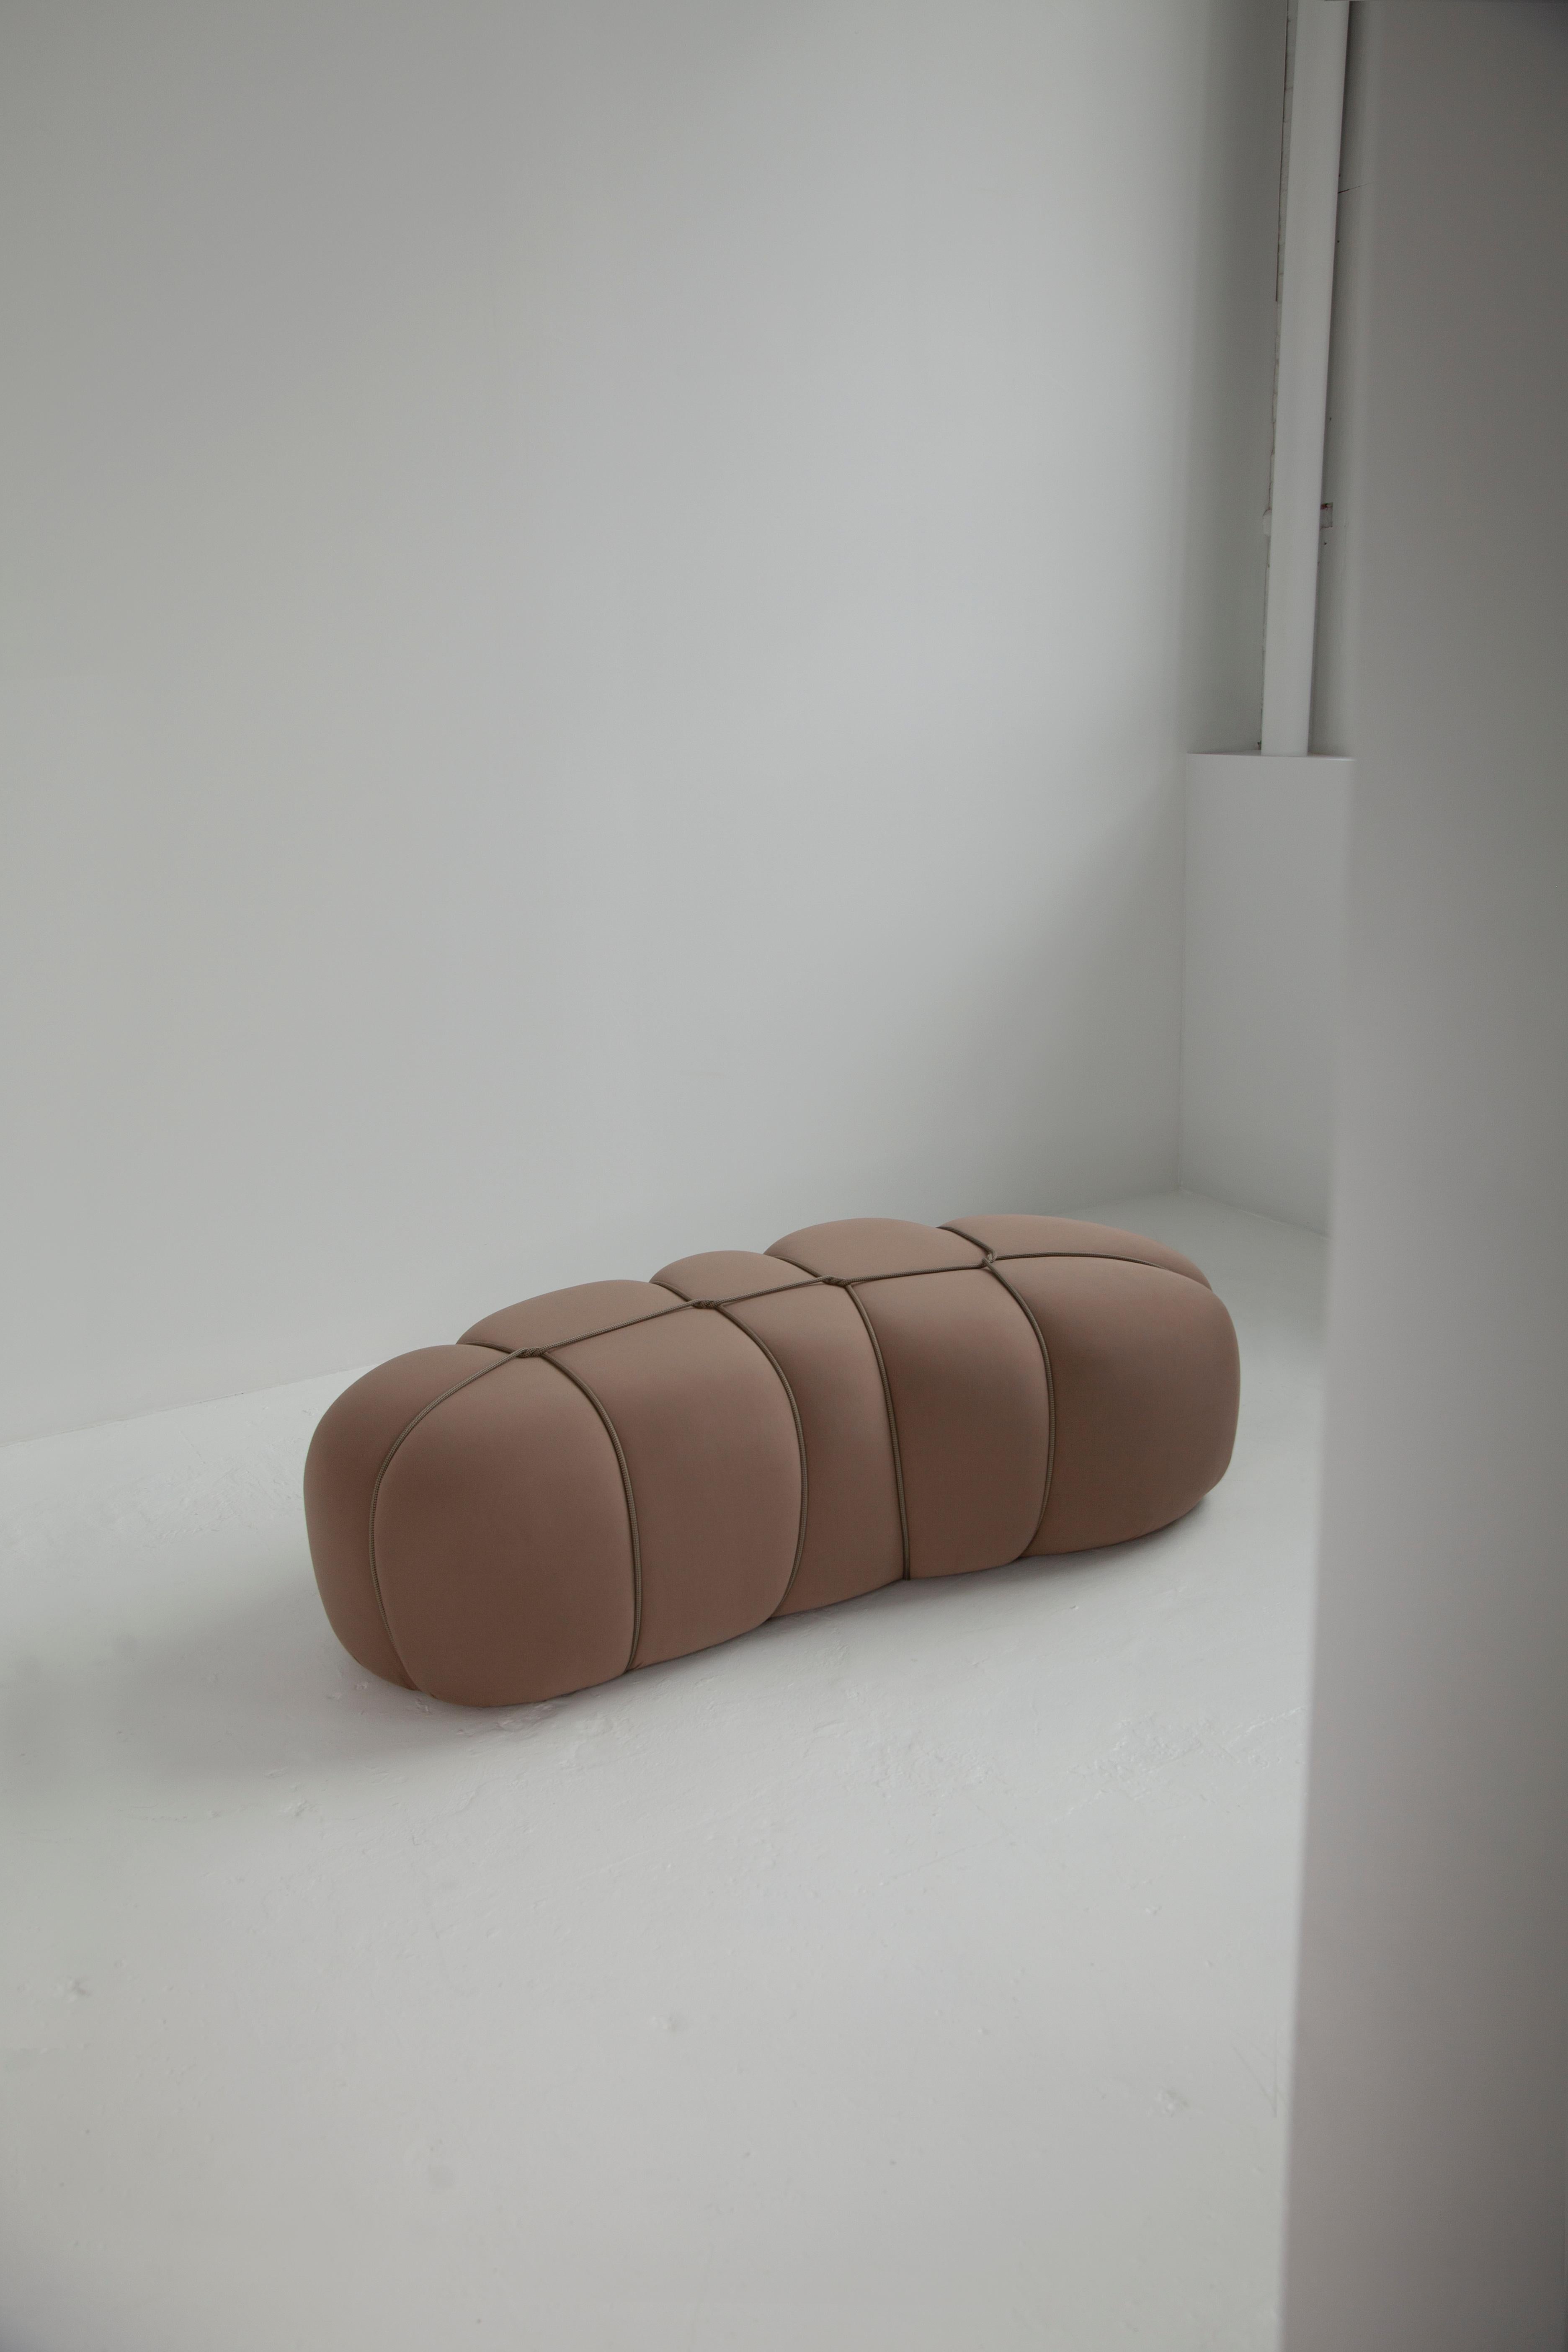 Les poufs sont une forme de mobilier modulaire conçu à la fois pour la détente et l'assise. Ils sont fabriqués en mousse souple recouverte d'un tissu épais et élastique qui dissimule toutes les coutures visibles. S'inspirant de l'art complexe du